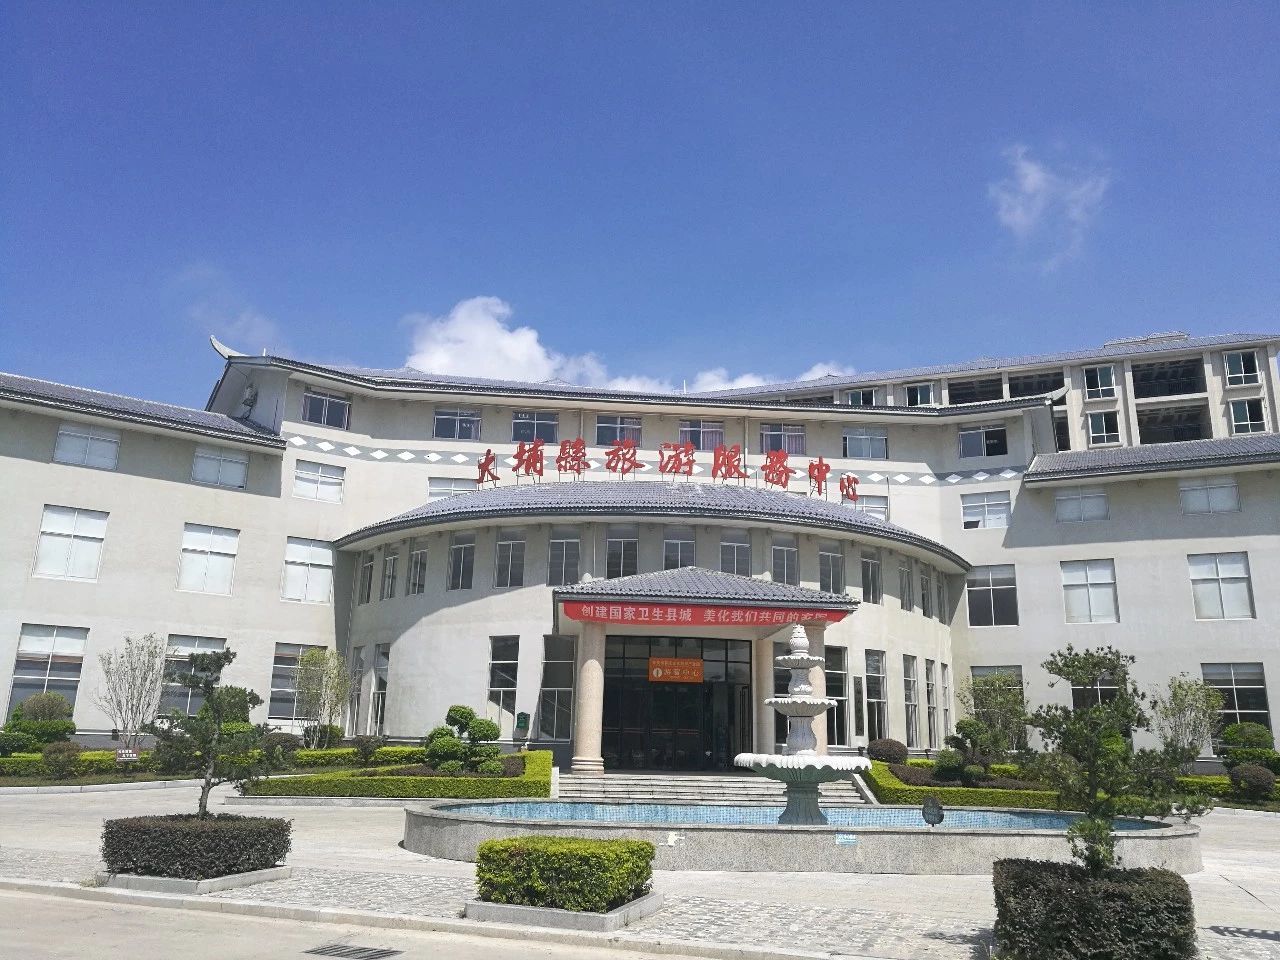 大埔县旅游服务中心。